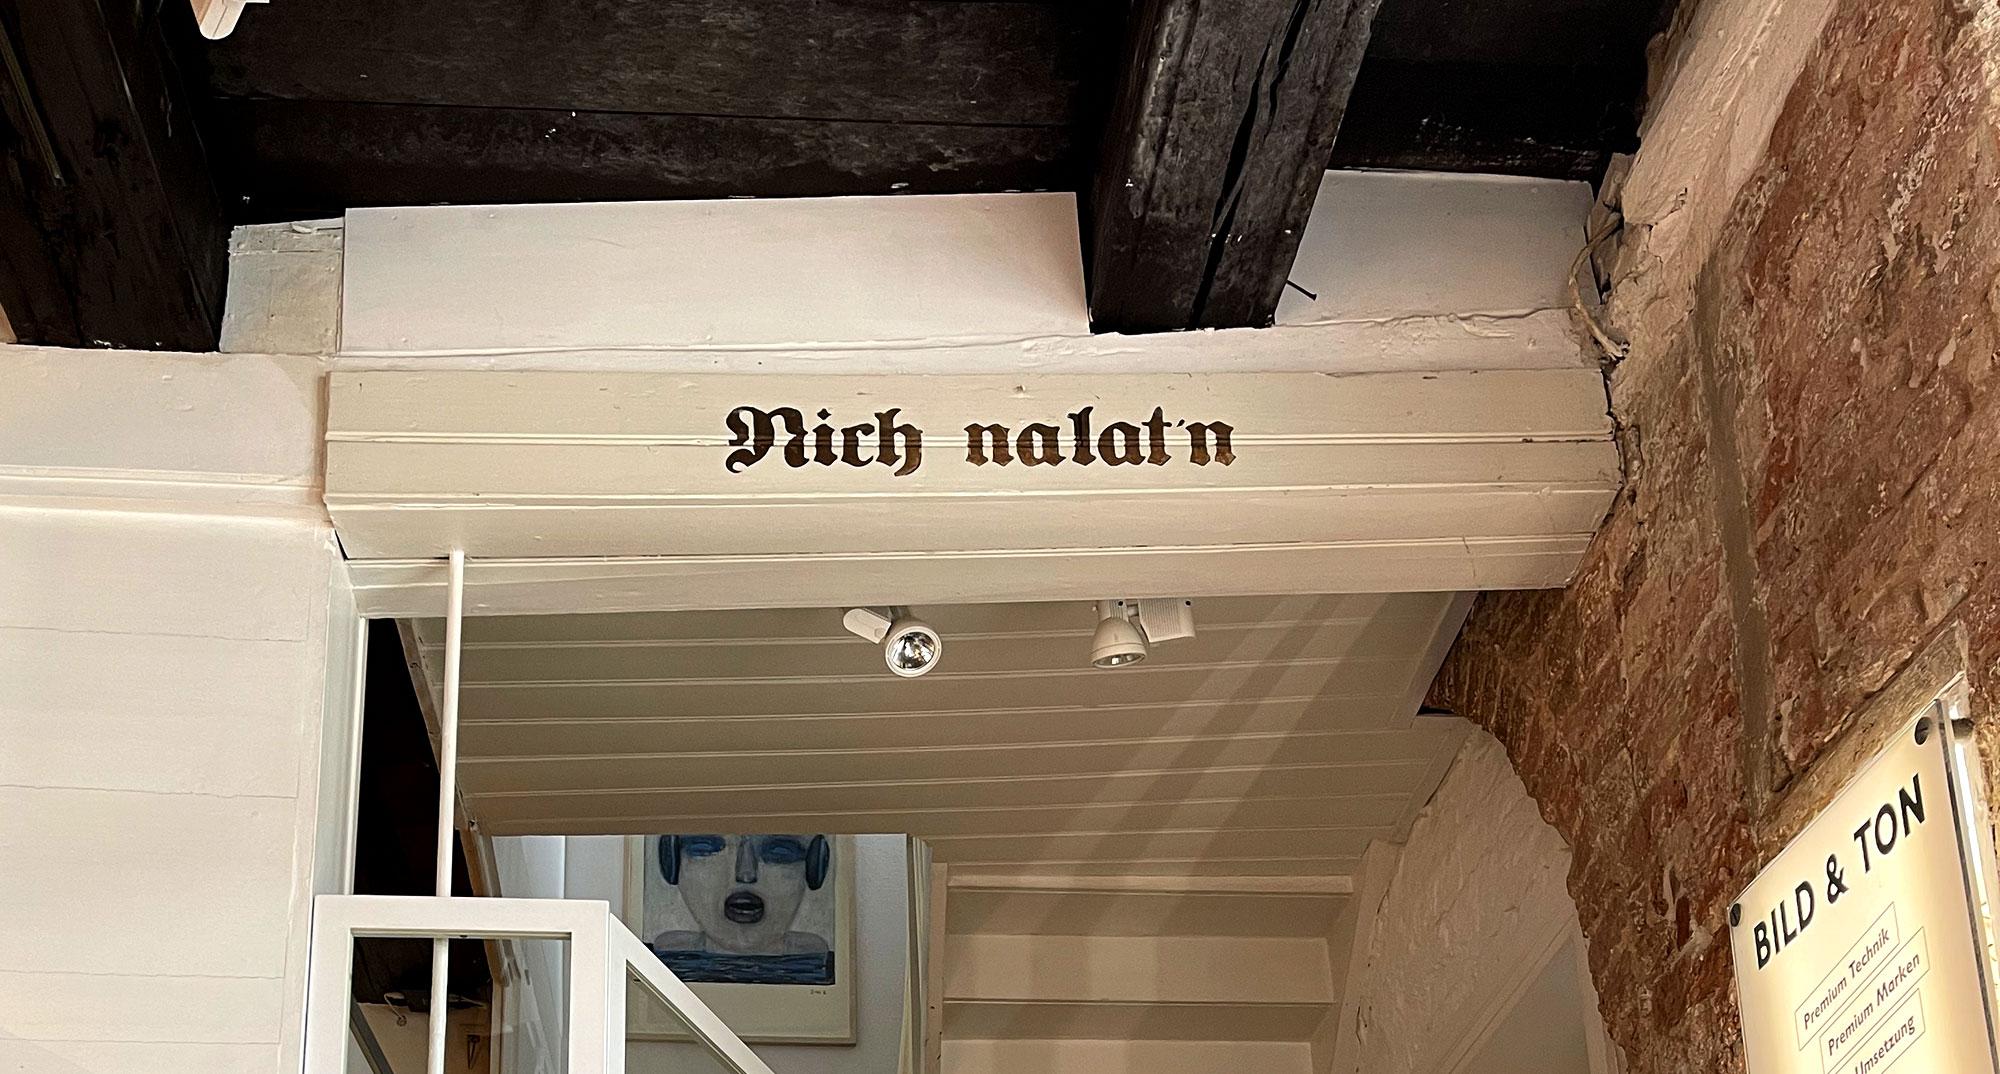 Schriftzug "Nich nalat'n" auf weißem Balken